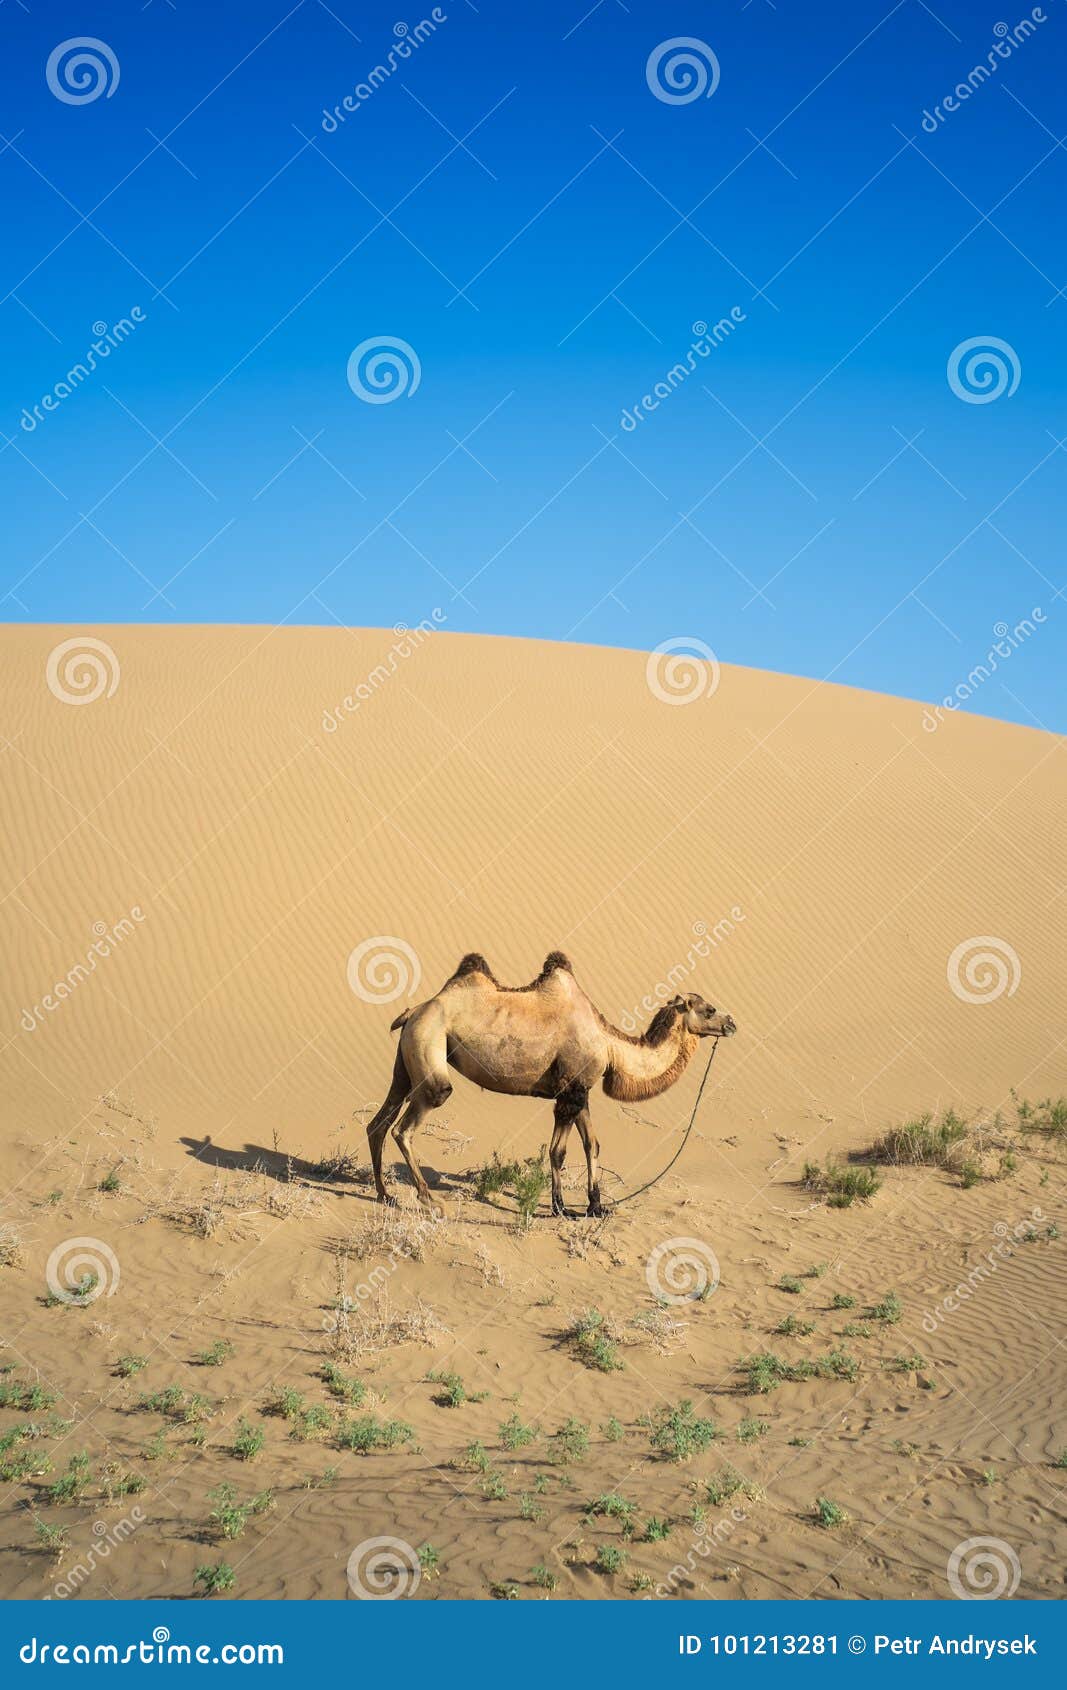 Где хранит воду верблюд: Зачем верблюду горбы? Чем питается верблюд? Сколько верблюд может жить без воды